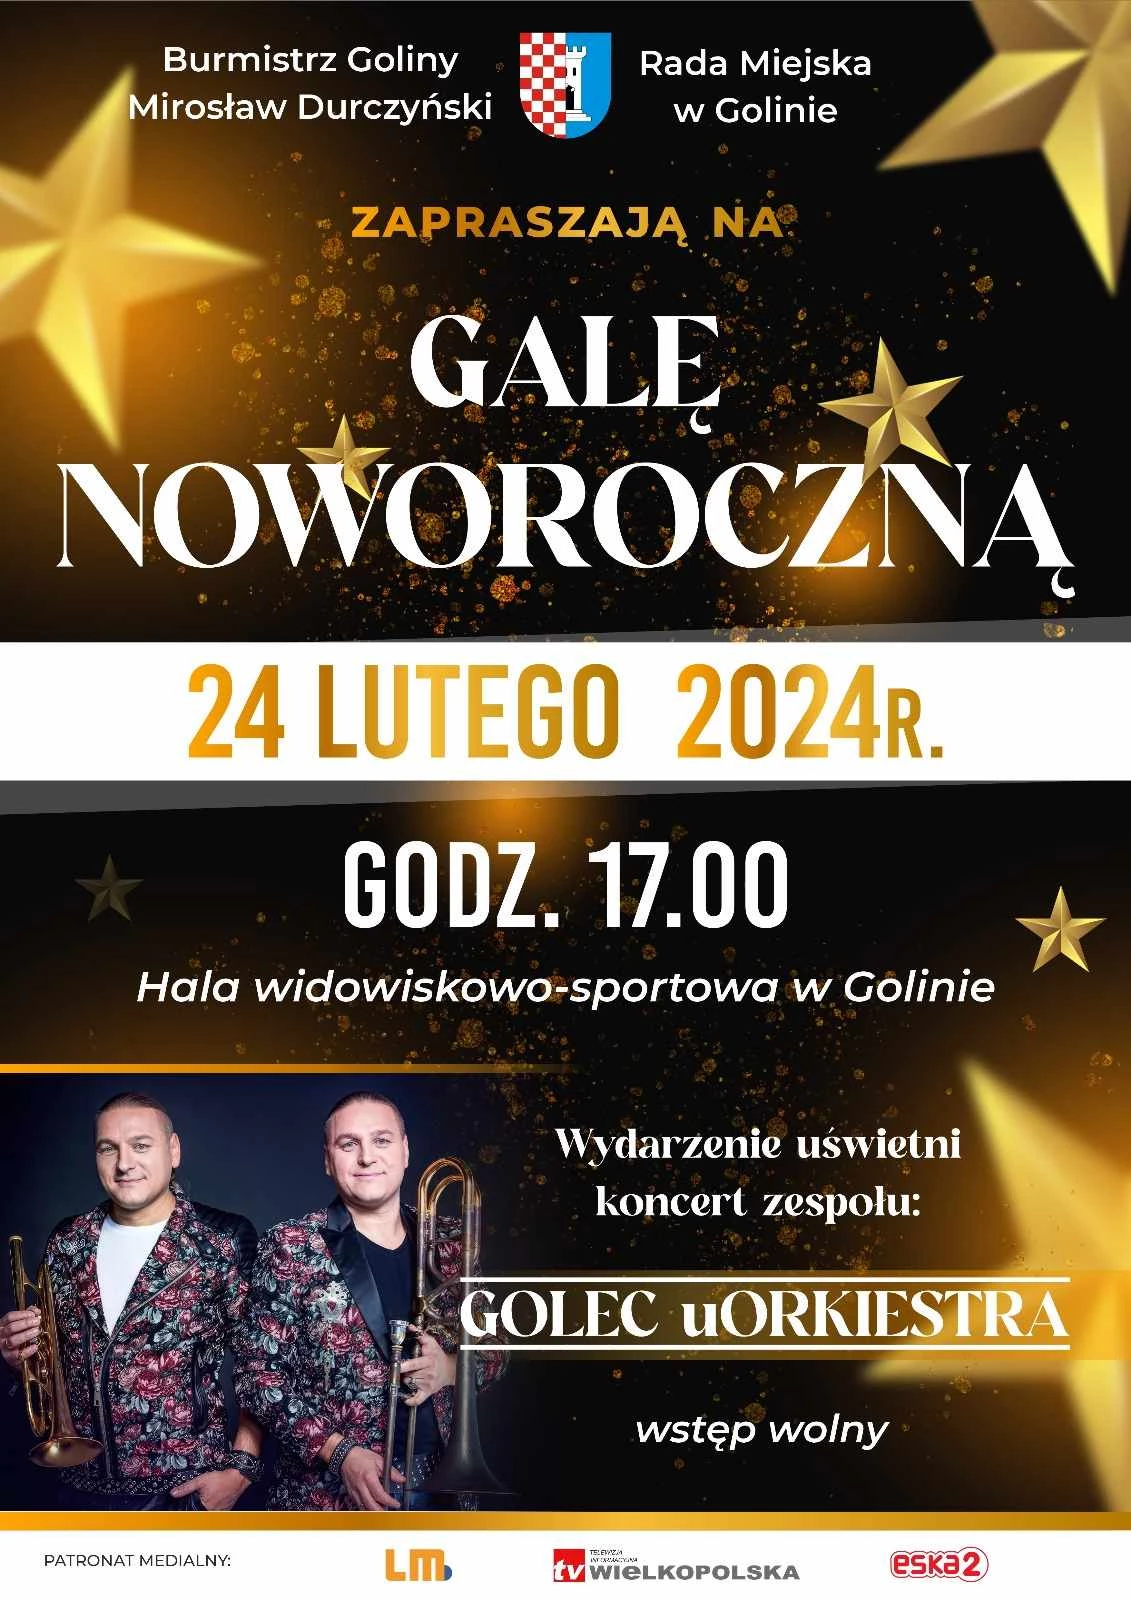 Gala Noworoczna w Golinie. Święto lokalnej społeczności